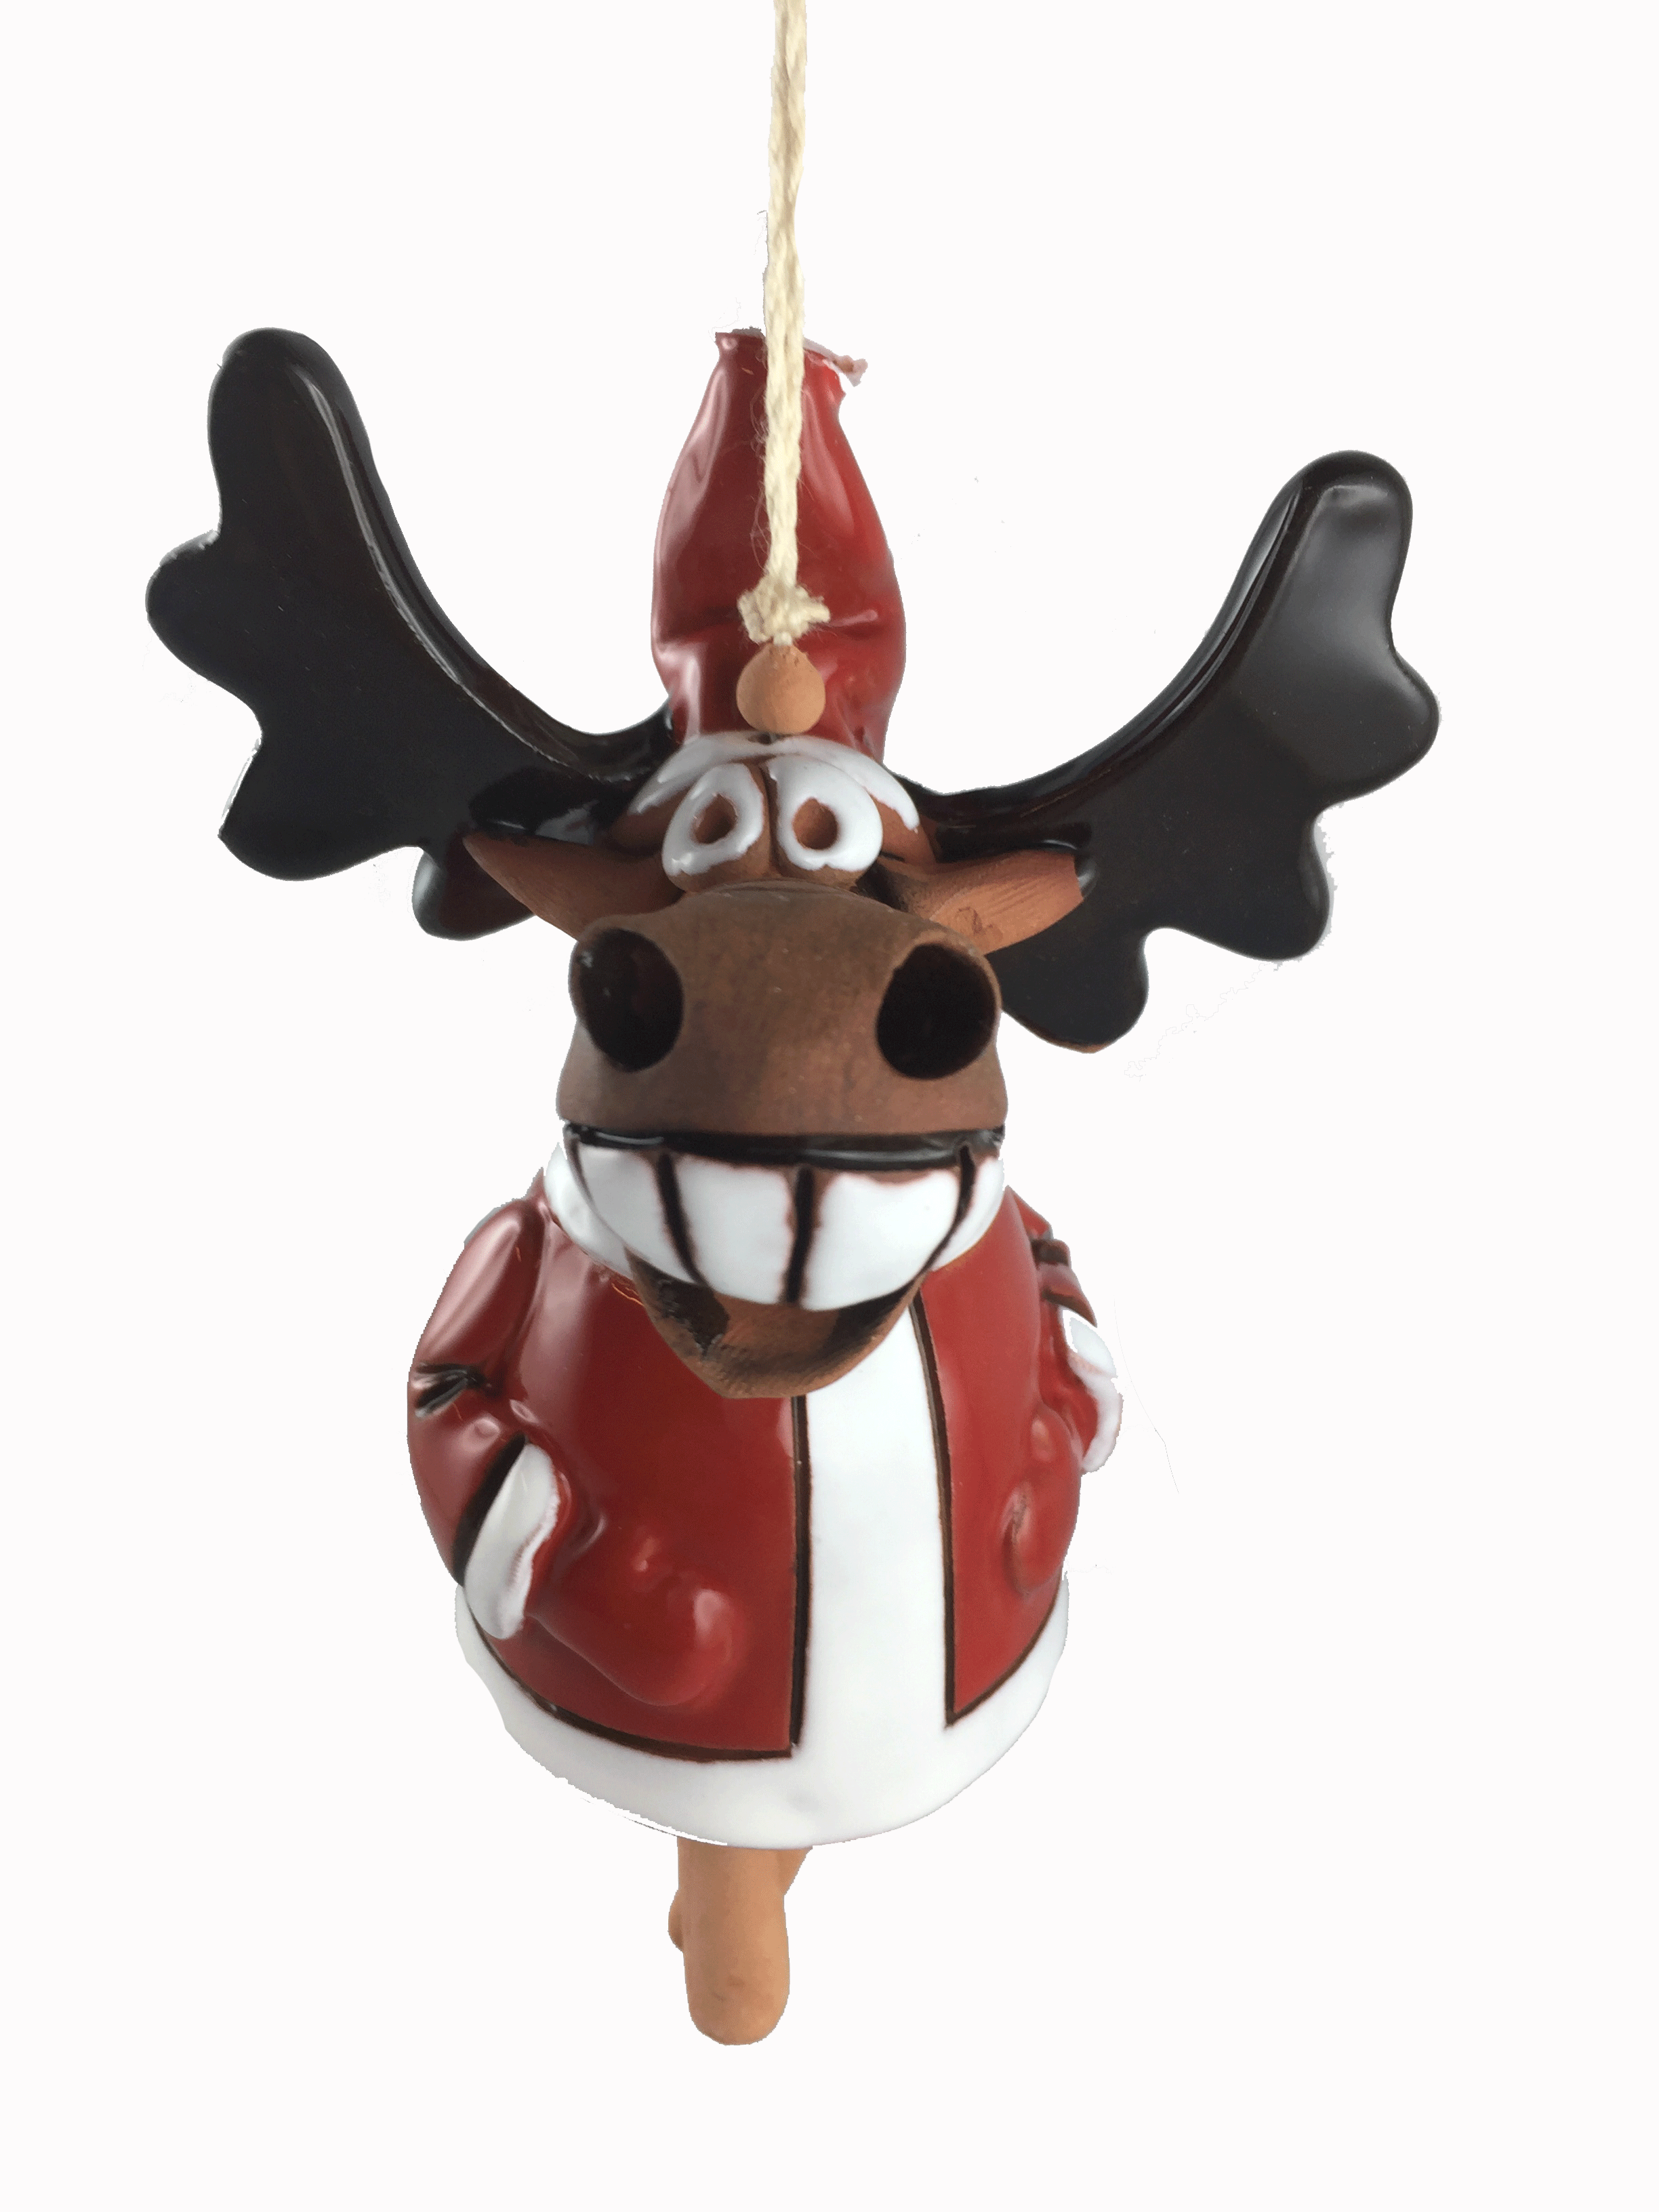 Smiling-Elk im Santa Dress - x-mas-Mobile long-rope